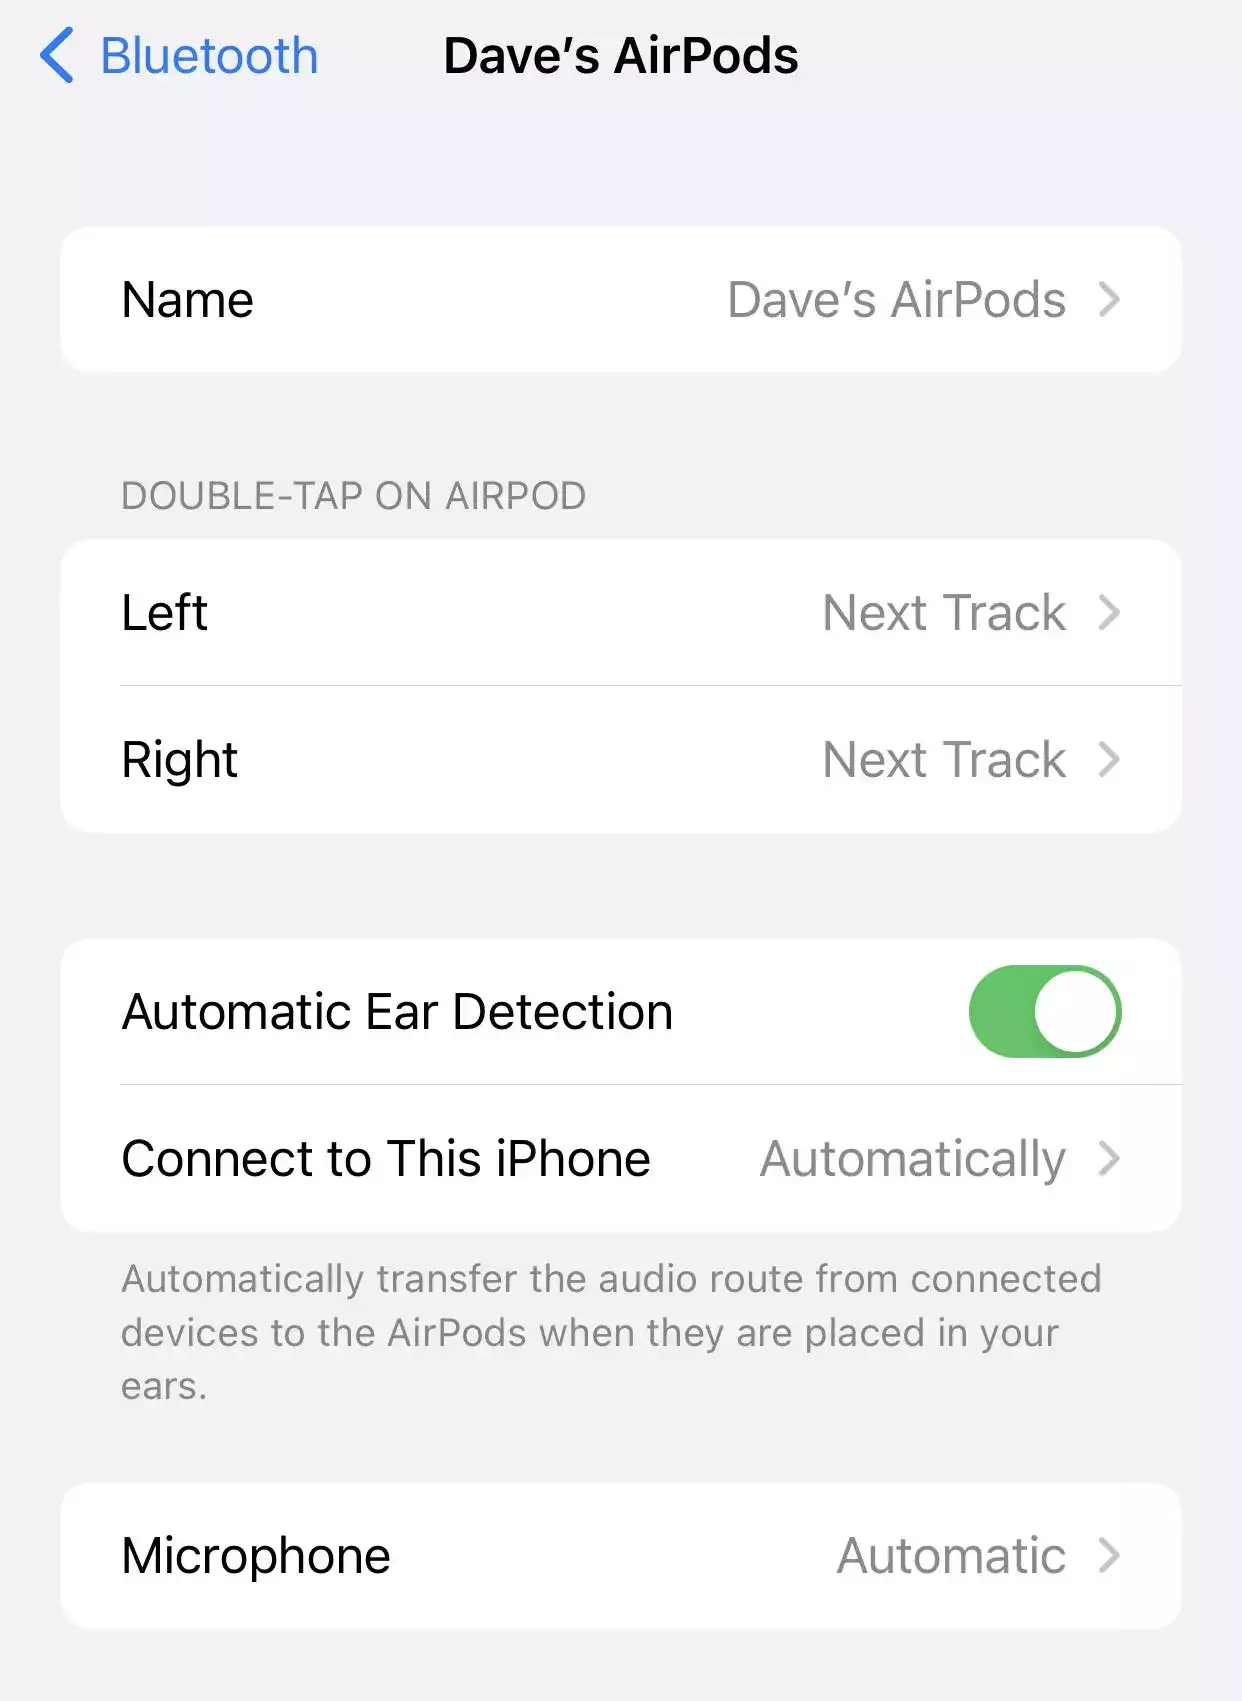 如何使用 AirPods 或 AirPods Pro，以及自定义它们的设置